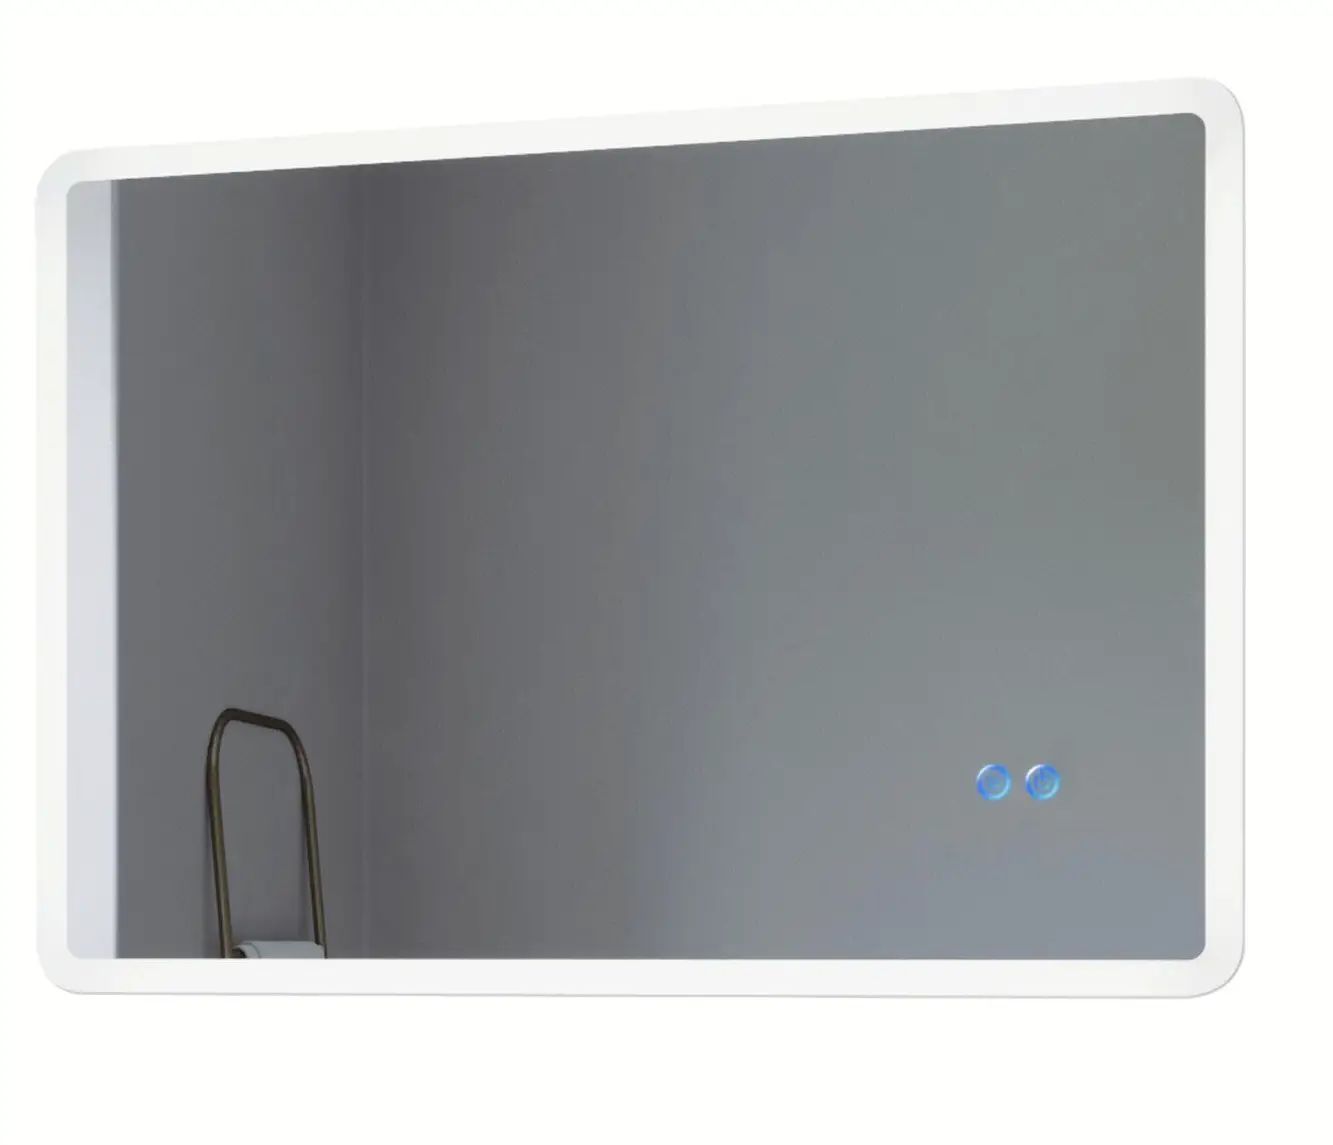 LED-Spiegel Touch Badezimmerspiegel